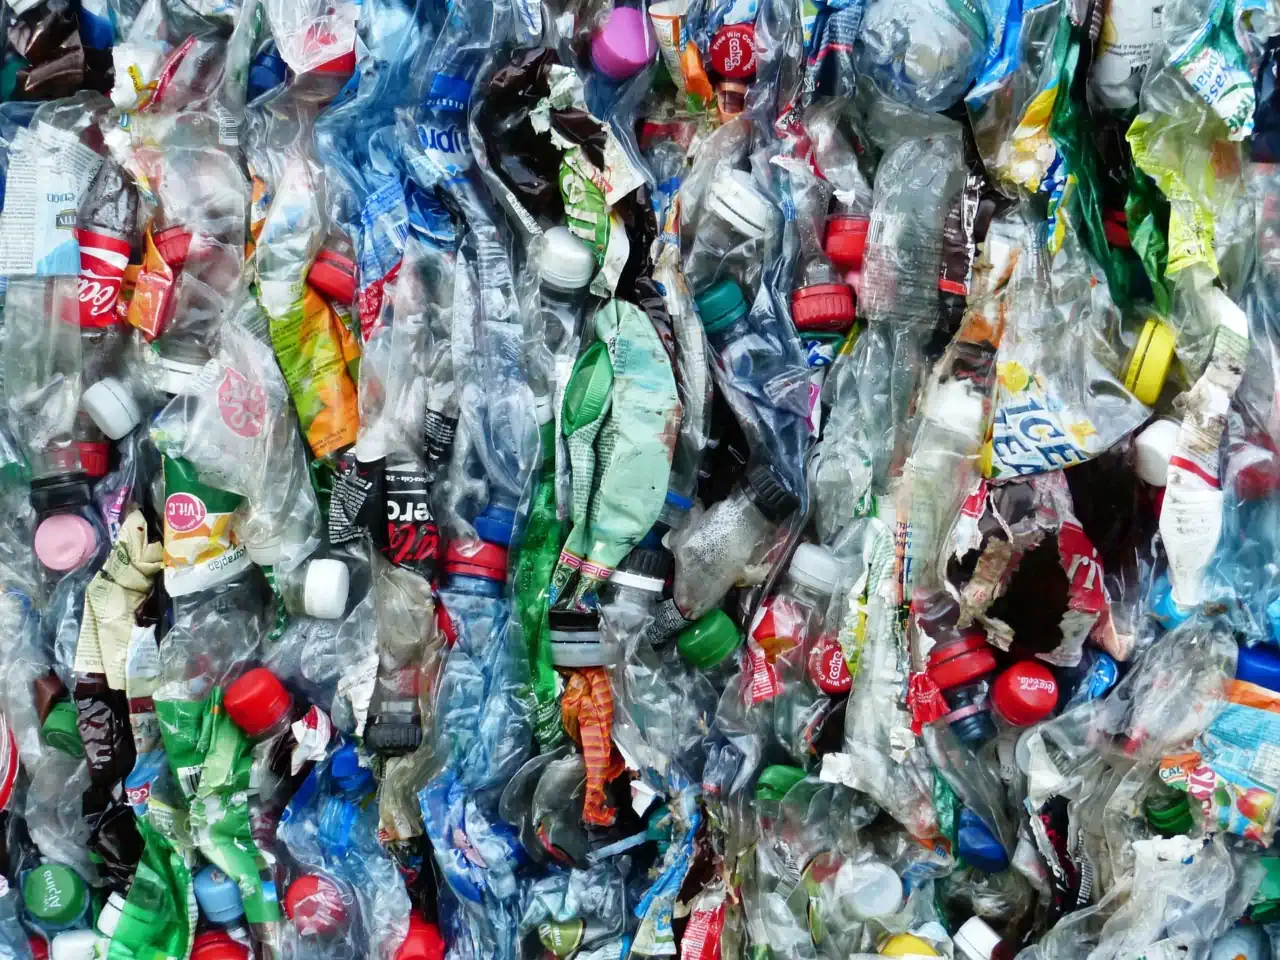 Пластику — нет! <br>Что может сделать житель мегаполиса в борьбе за экологию